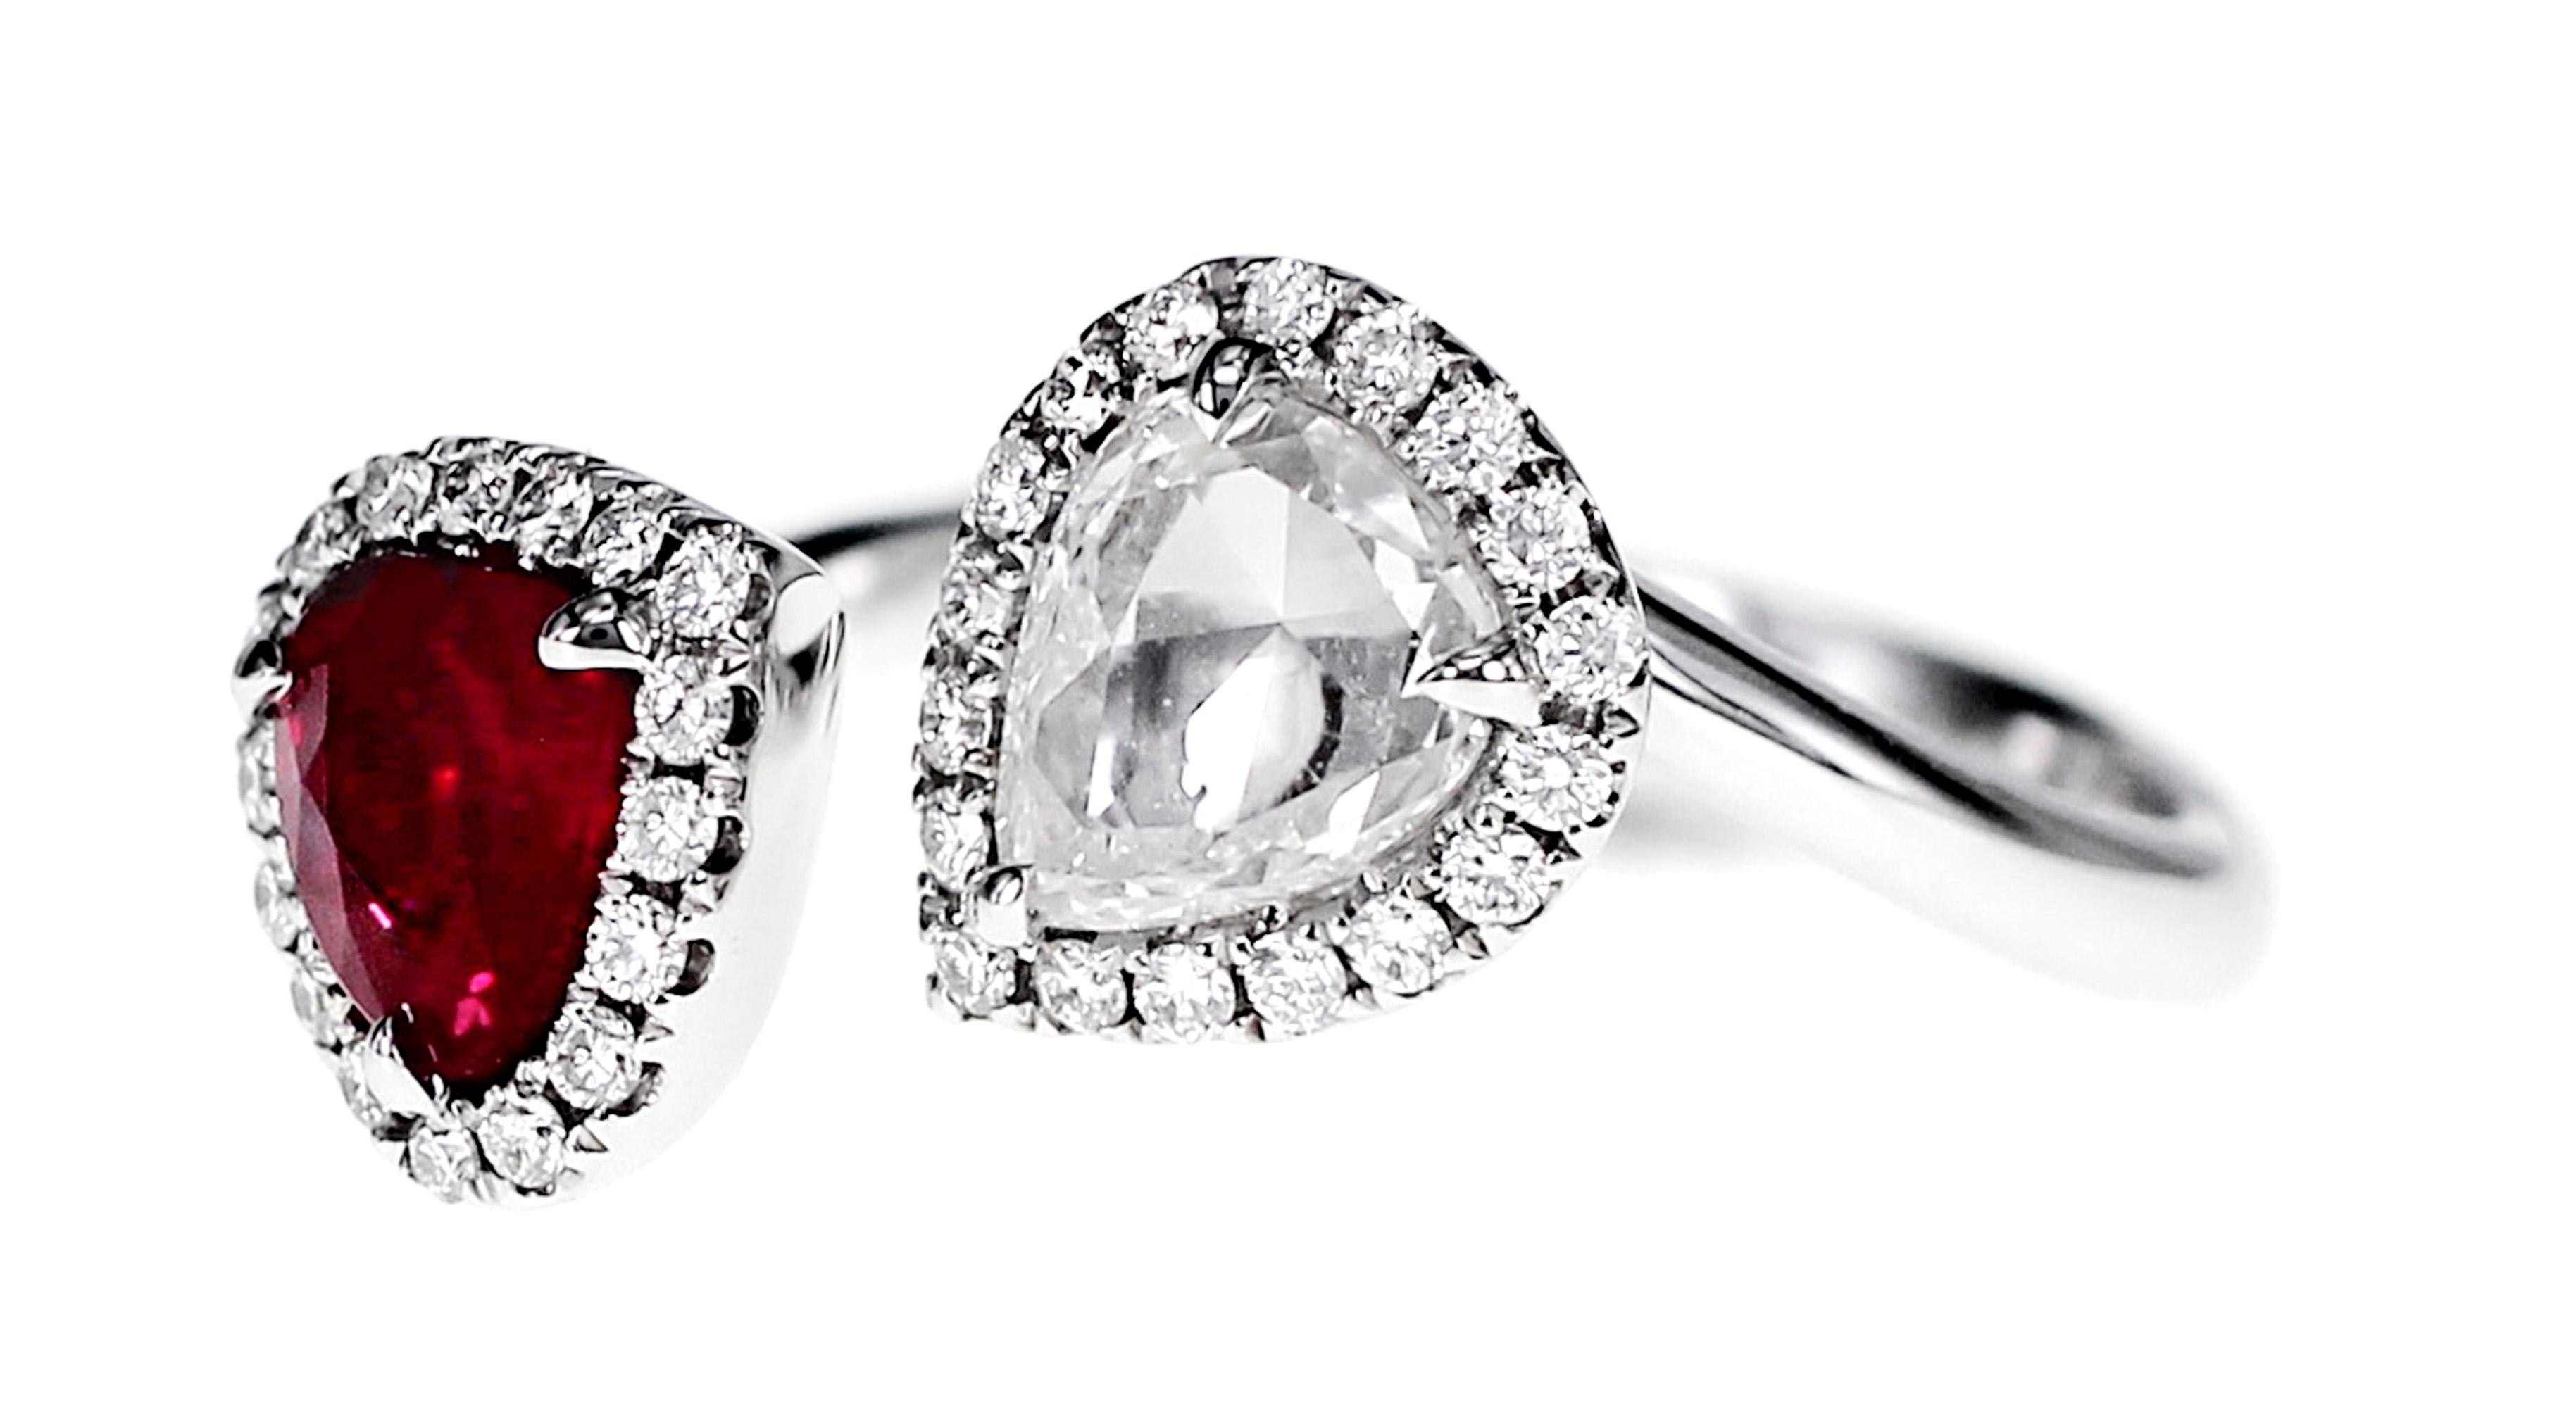 Les détails de l'anneau sont mentionnés ci-dessous :
Rubis - 1,03 carats
Diamant blanc - 0,97 carats.
Taille de l'anneau : US 6.5
La taille de l'anneau peut être modifiée sur demande.